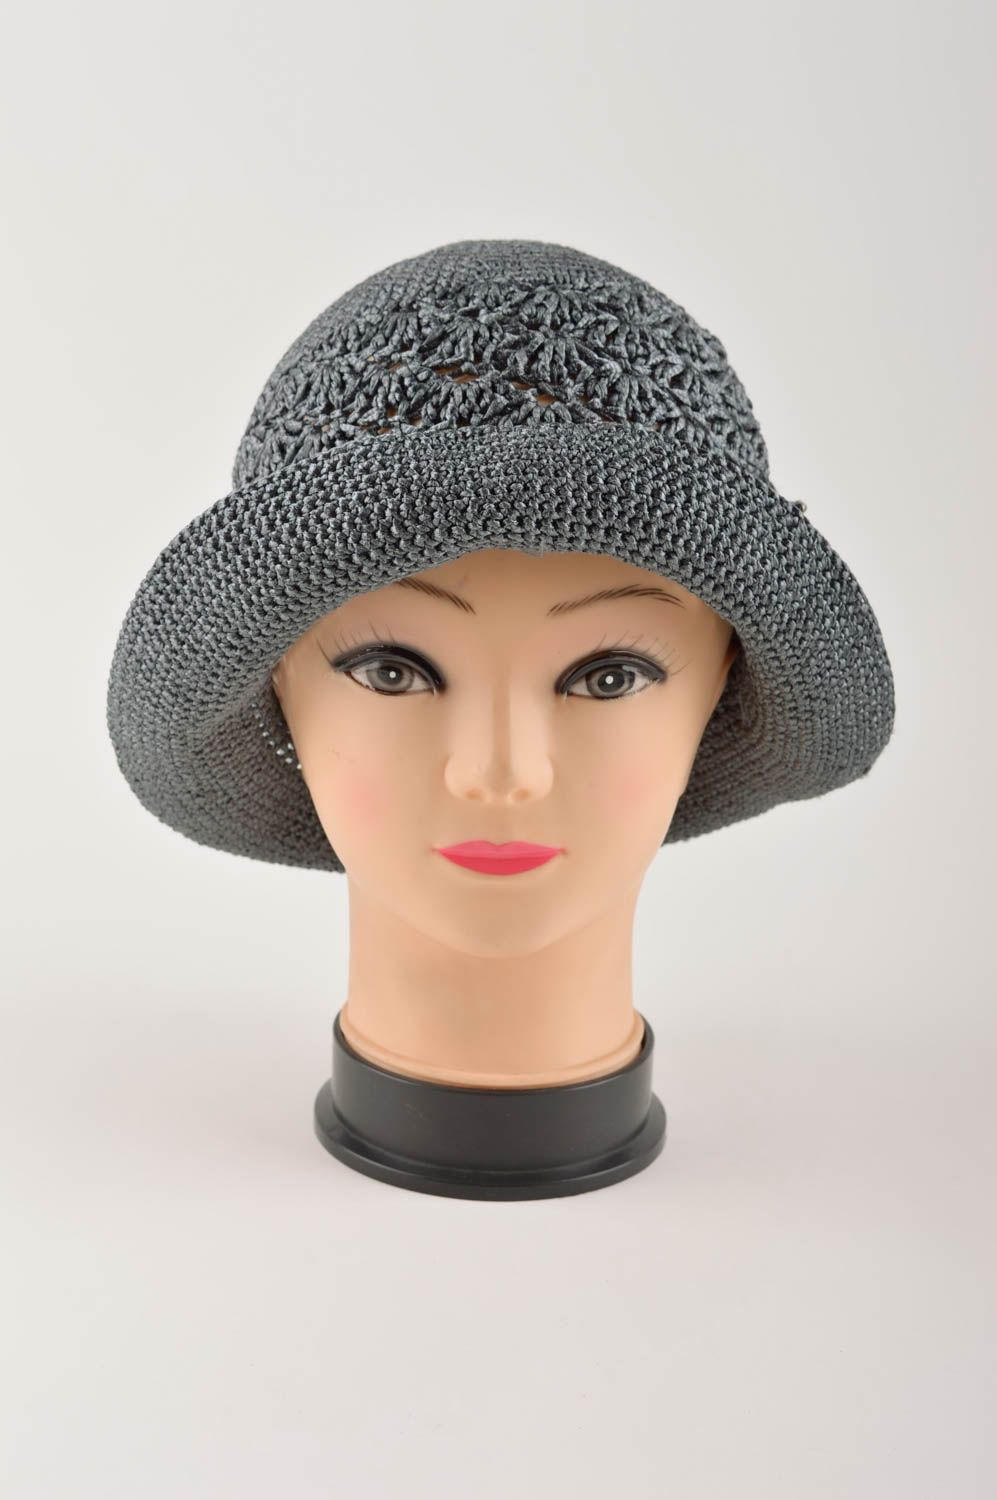 Handmade gehäkelter Hut Designer Accessoire Hut für Damen schöner Hut grau foto 3